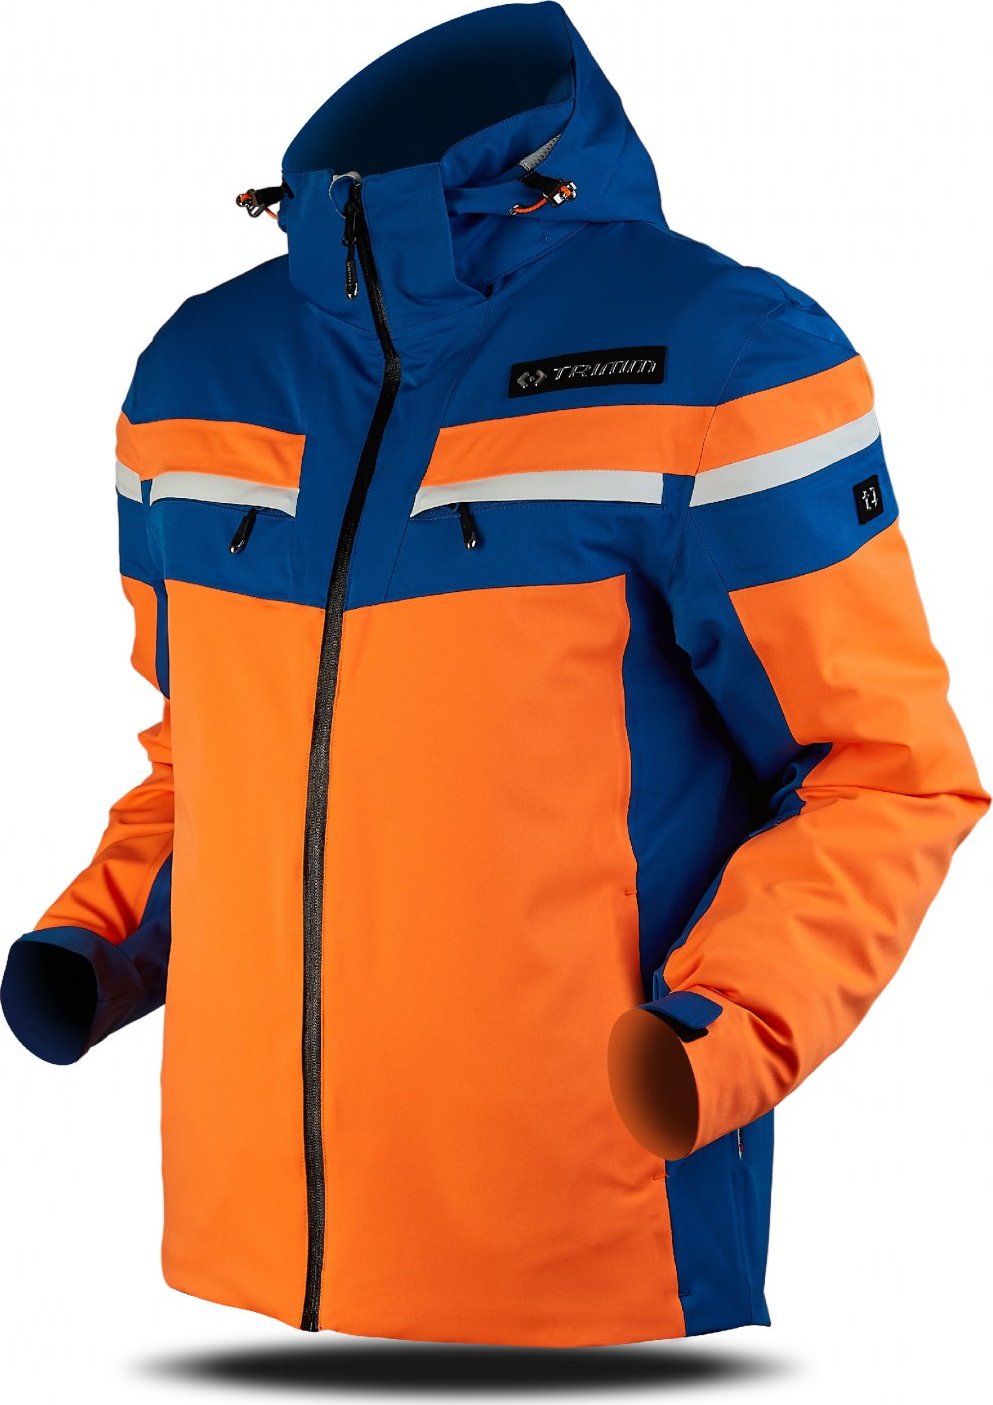 Pánská lyžařská bunda TRIMM Fusion oranžová Velikost: XL, Barva: signal orange/navy/white